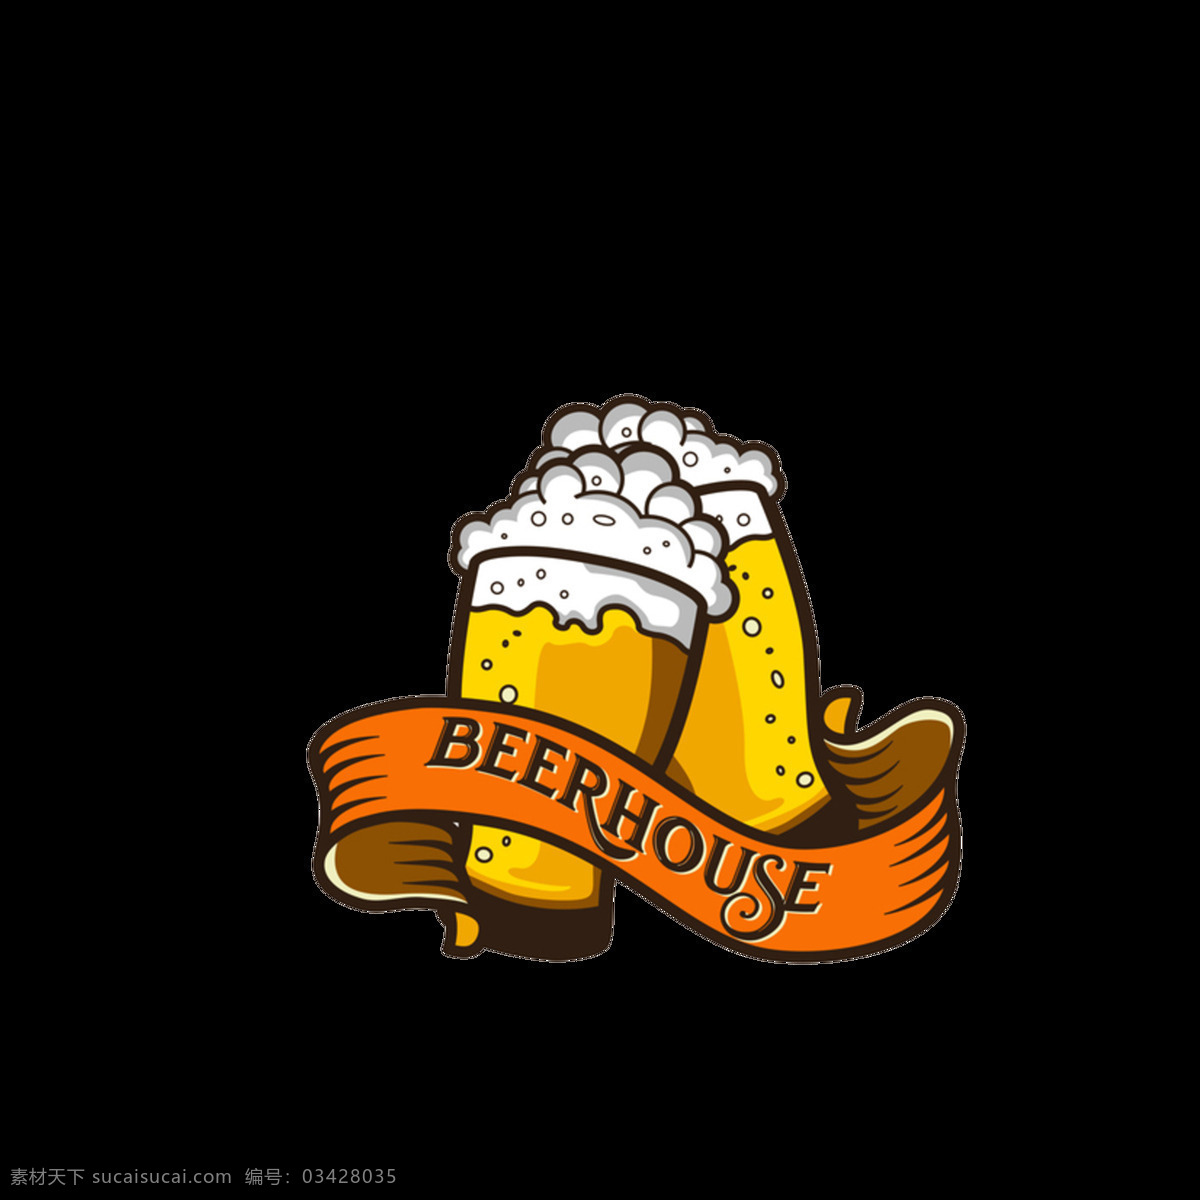 啤酒卡通 啤酒元素 啤酒透明素材 手绘啤酒